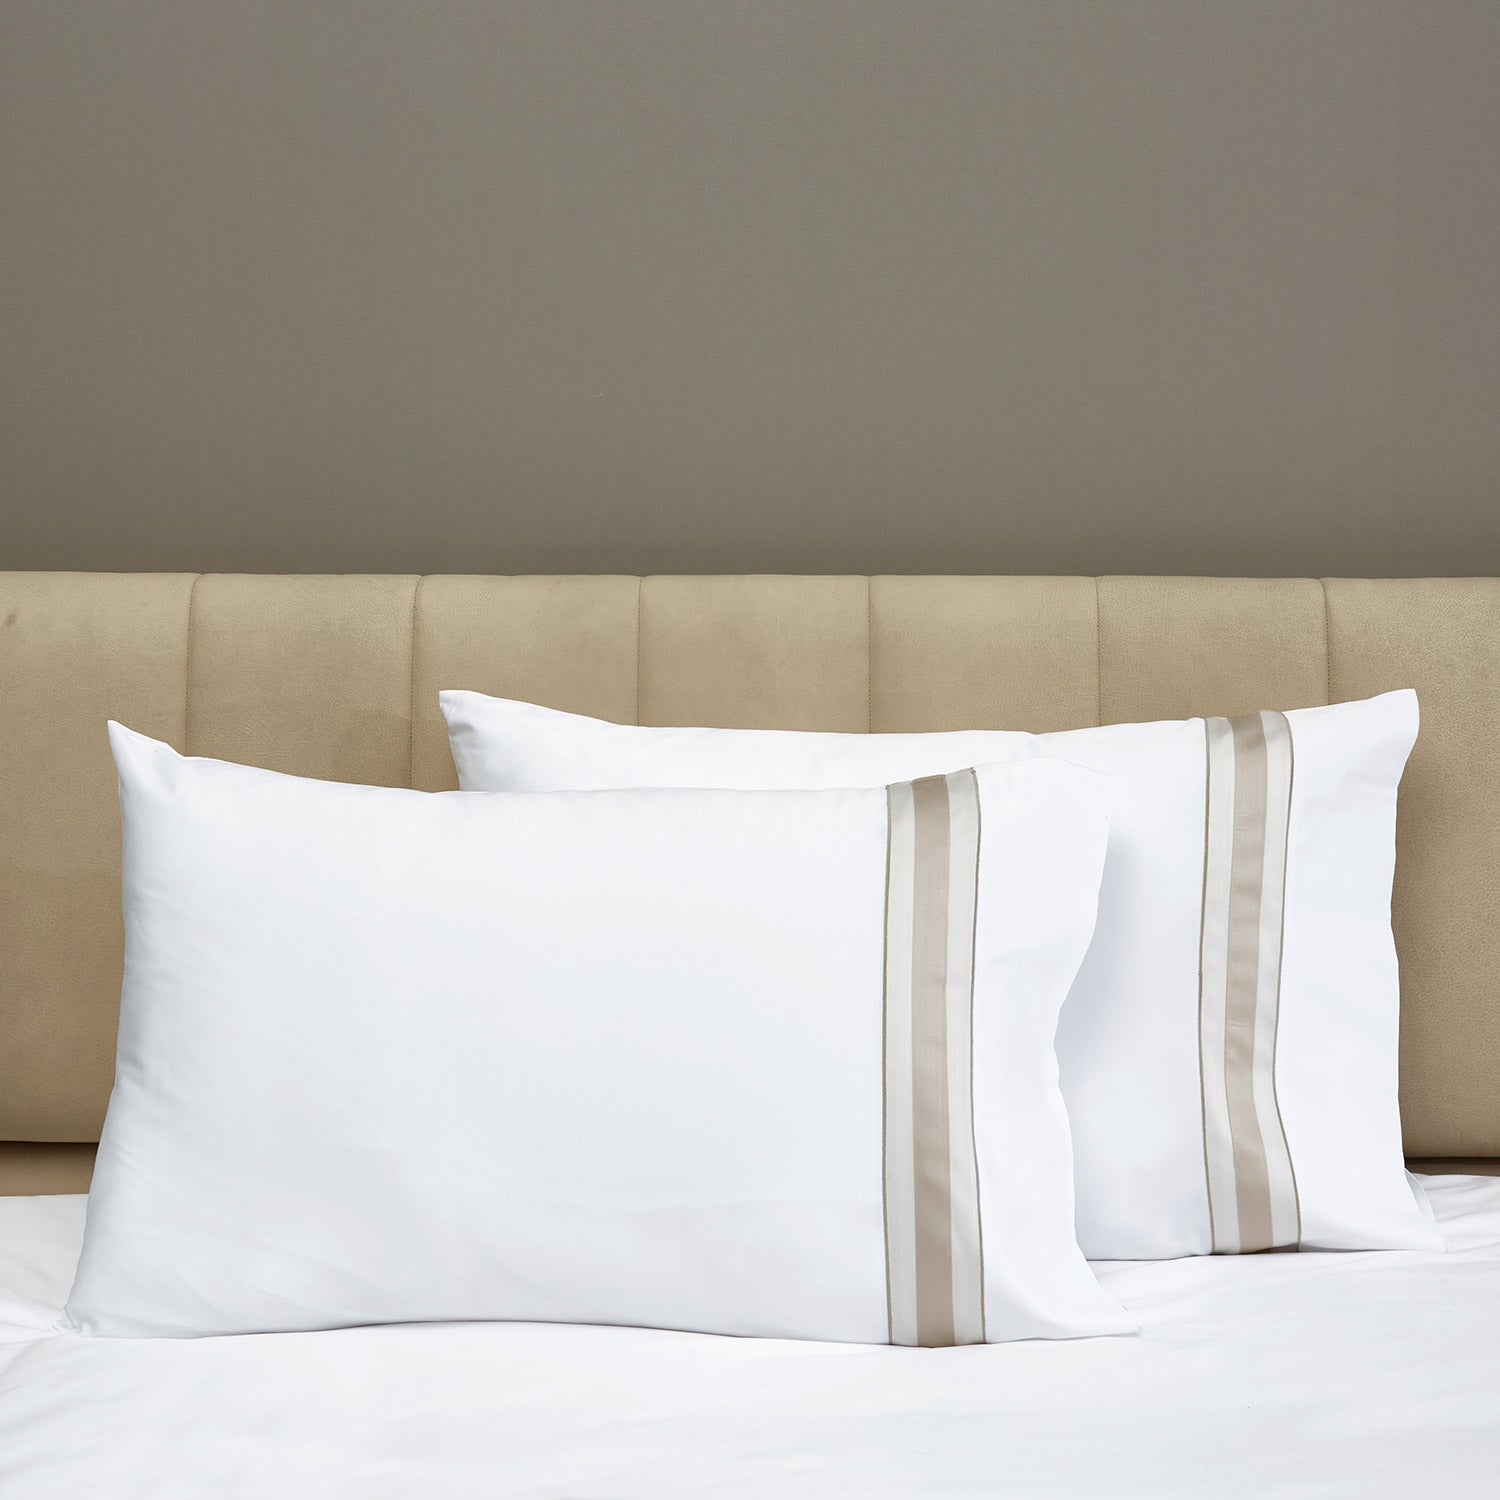 Dimora Sheets & Pillowcases, White/Khaki Pillowcase Pair / Standard